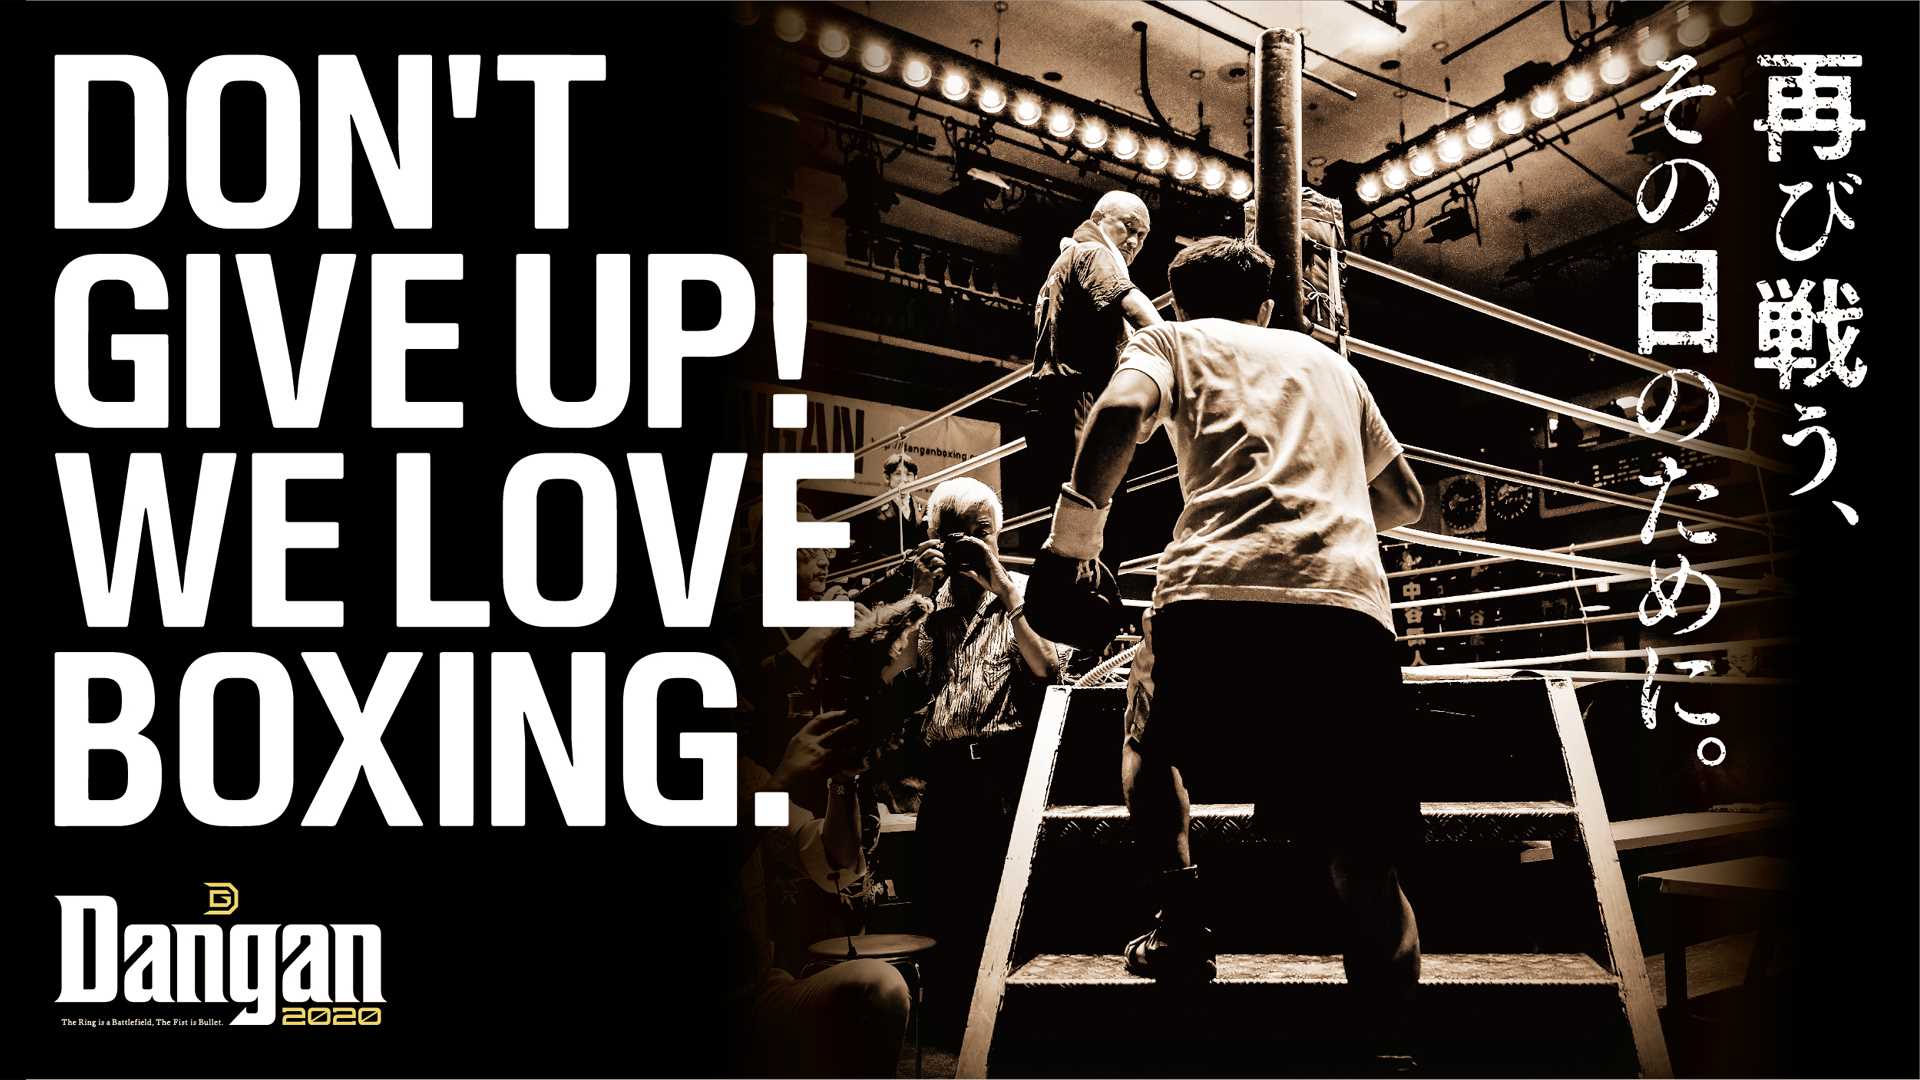 プロボクシング 19 年開催 計450試合以上を無料公開 Boxingraise無料視聴キャンペーン 開催 株式会社danganのプレスリリース